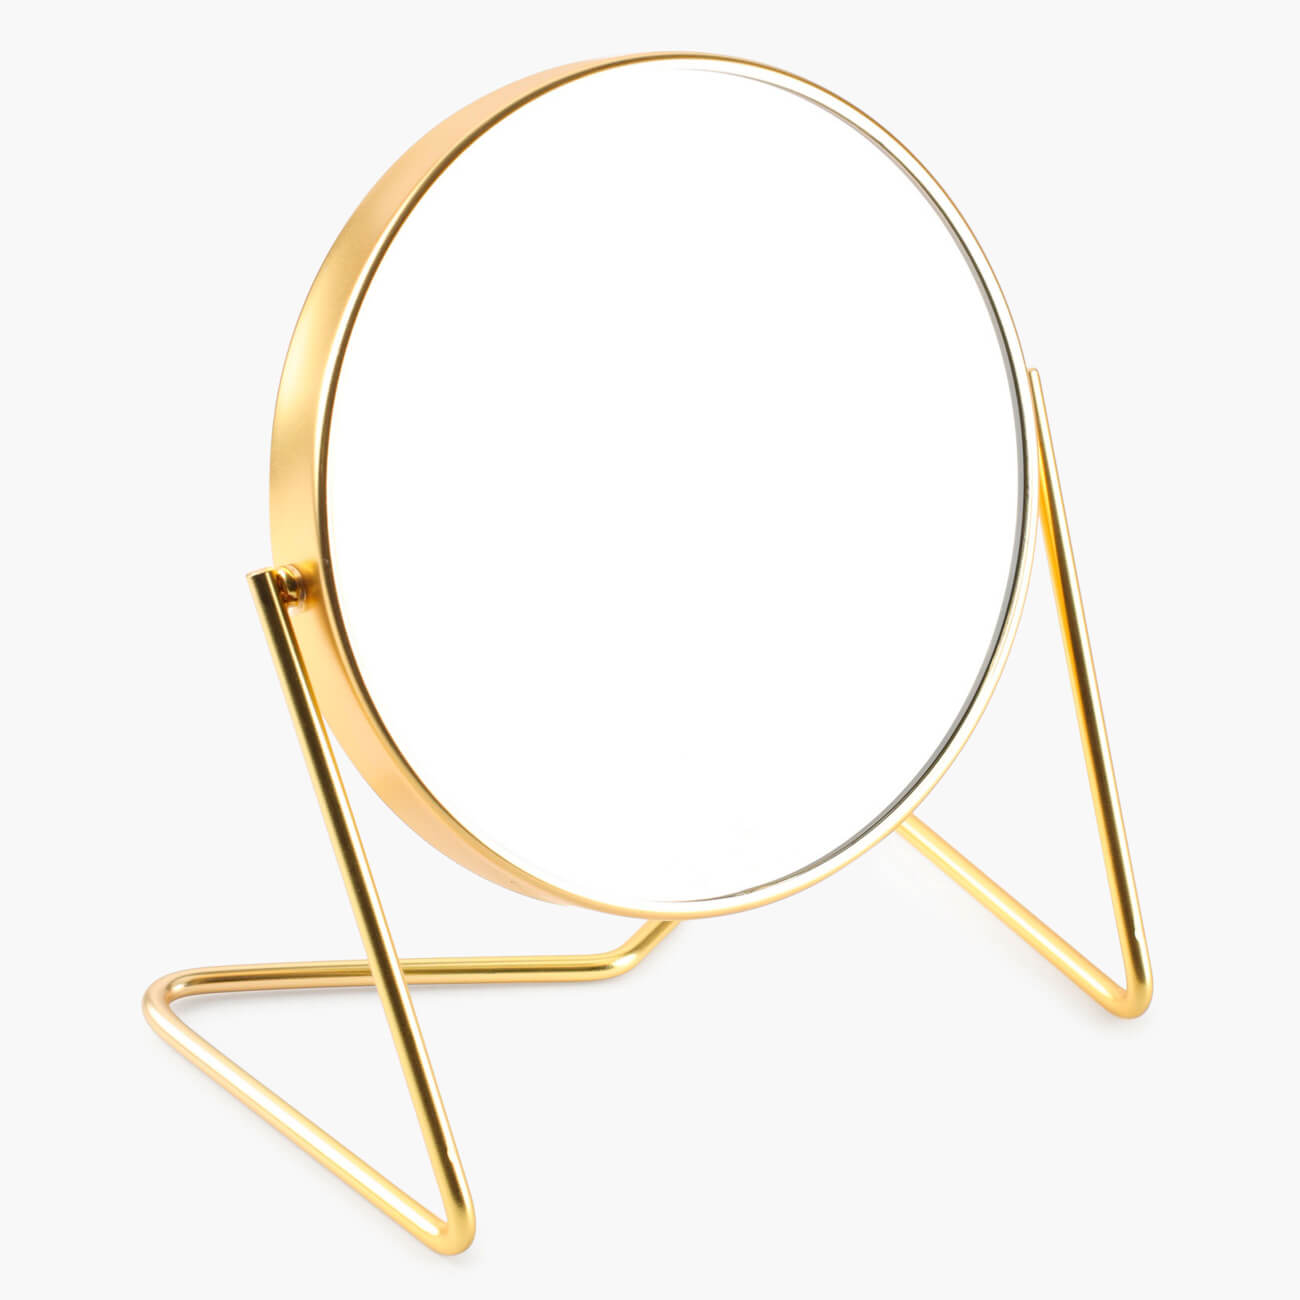 Зеркало настольное, 18 см, двустороннее, металл, круглое, золотистое, Trend зеркало косметическое two dolfins настольное увеличительное круглое 17 см